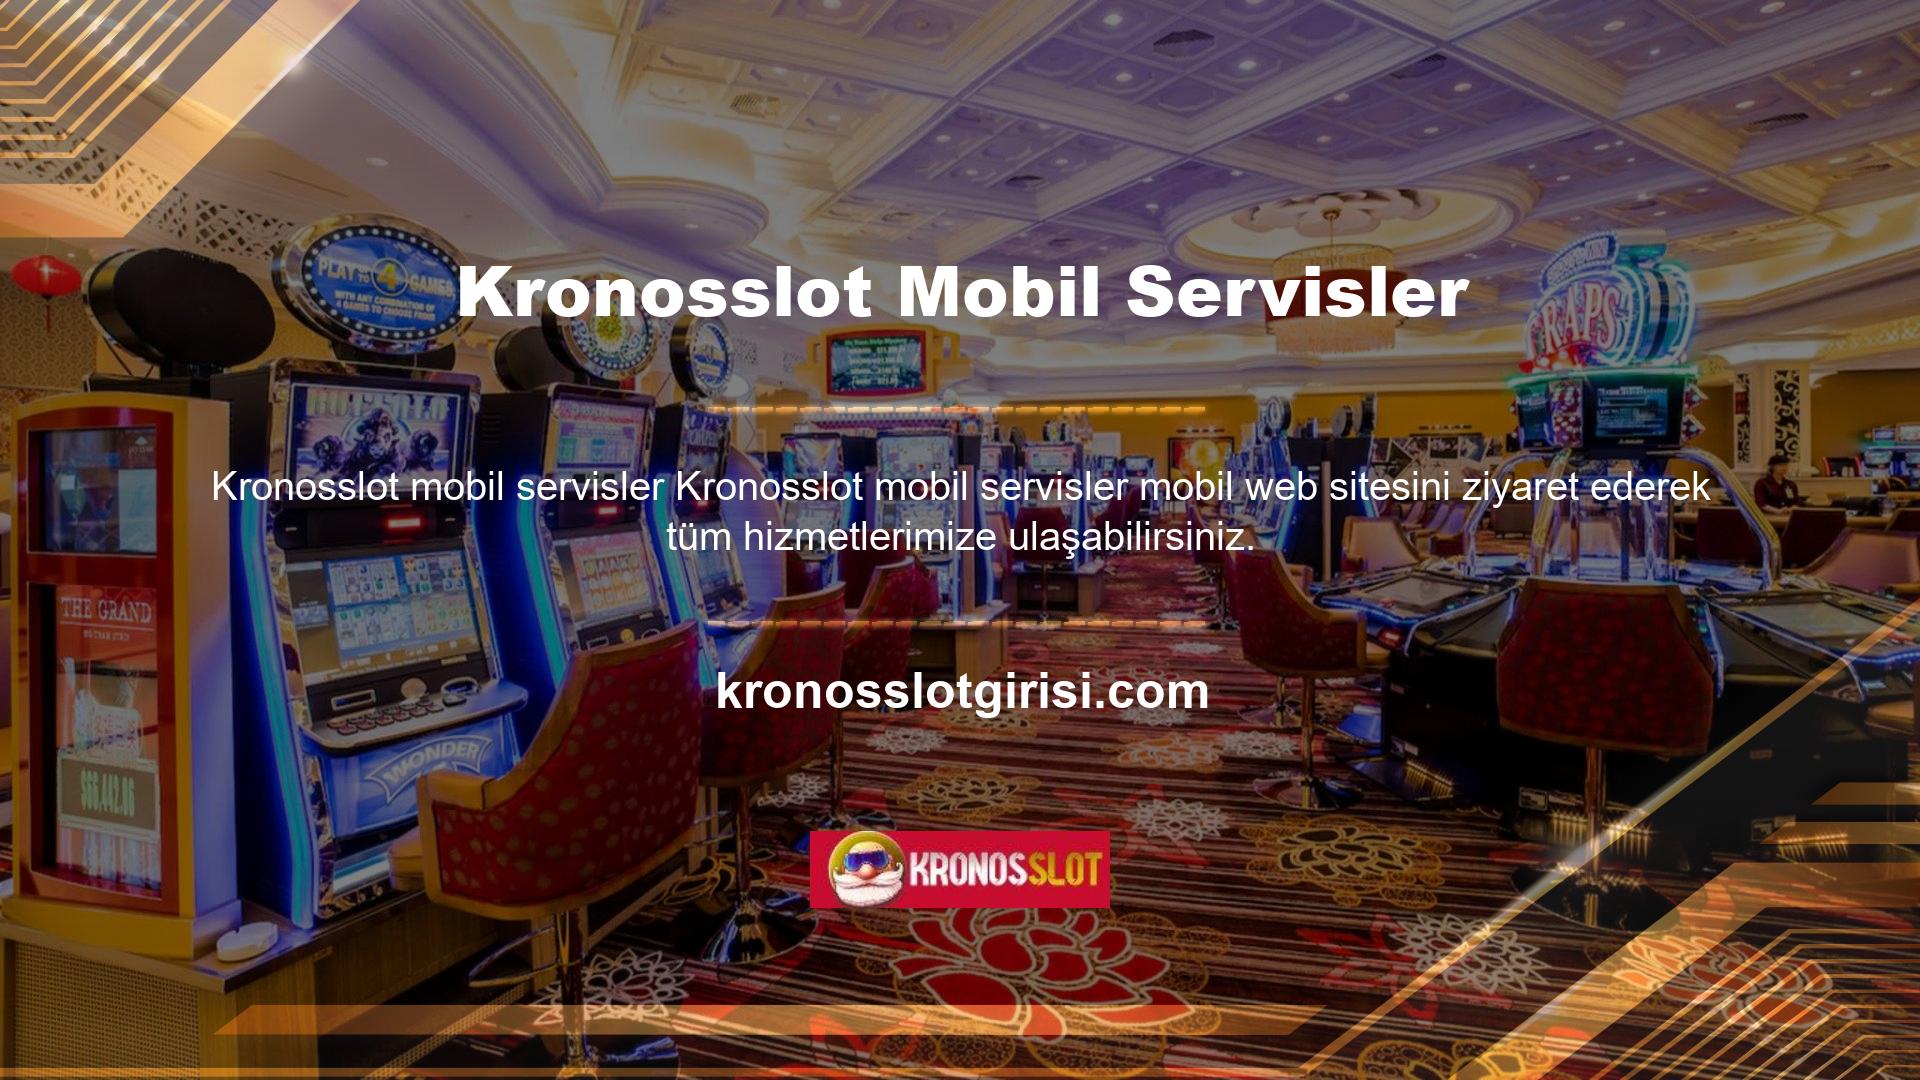 Kronosslot mobil servis bahis sitesi, bilgisayar üzerinden yapılabilecek tüm işlemleri kolaylıkla gerçekleştirmenize olanak sağlar